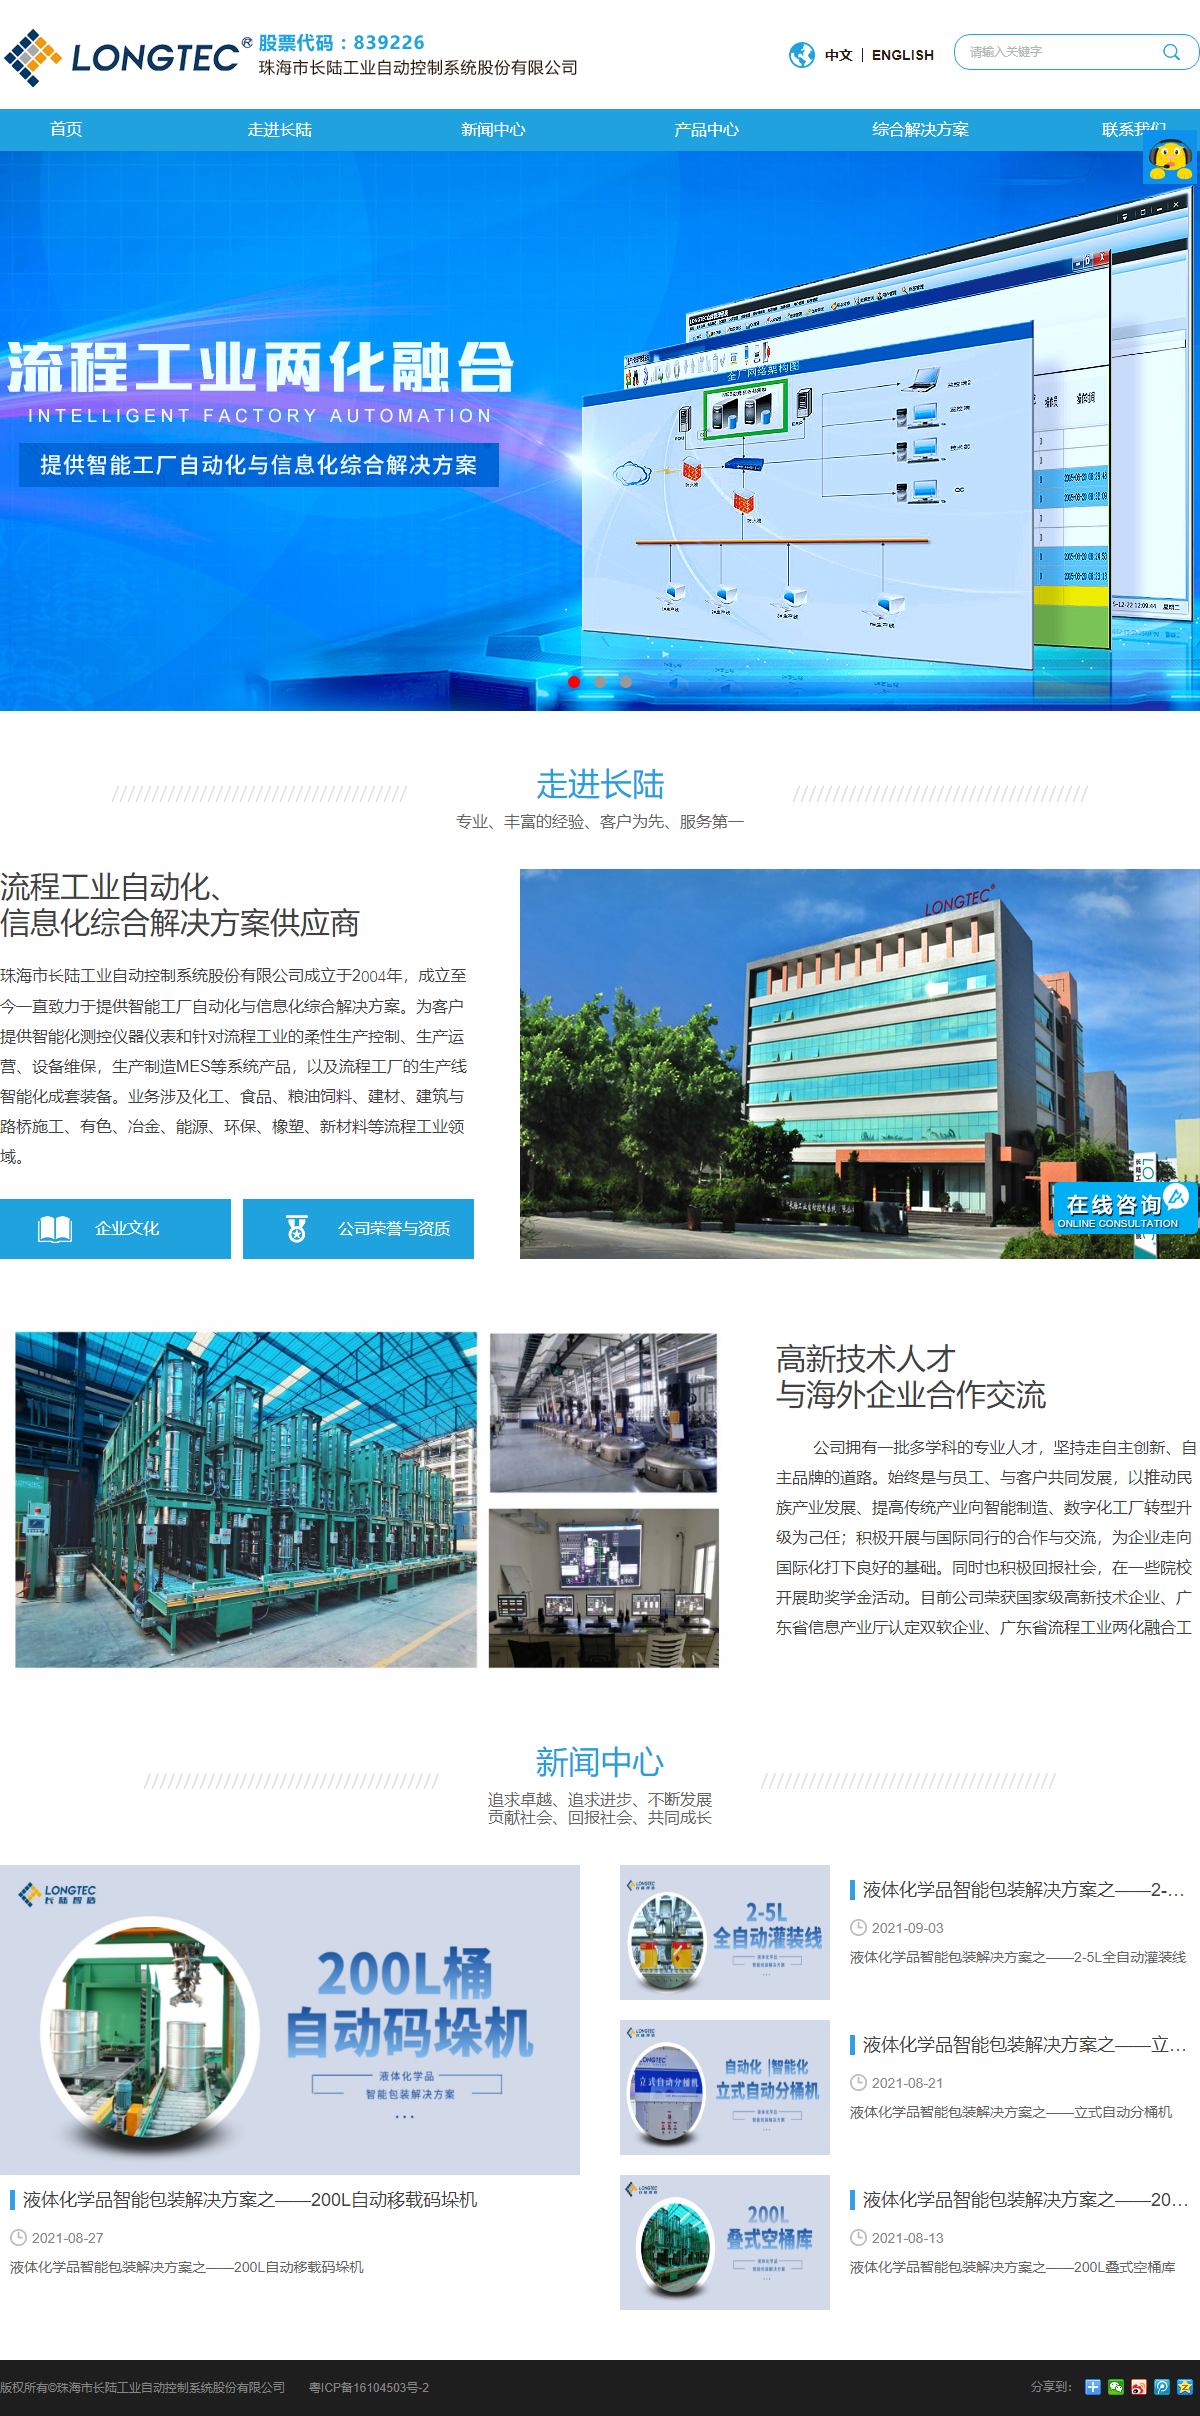 珠海市长陆工业自动控制系统股份有限公司网站案例